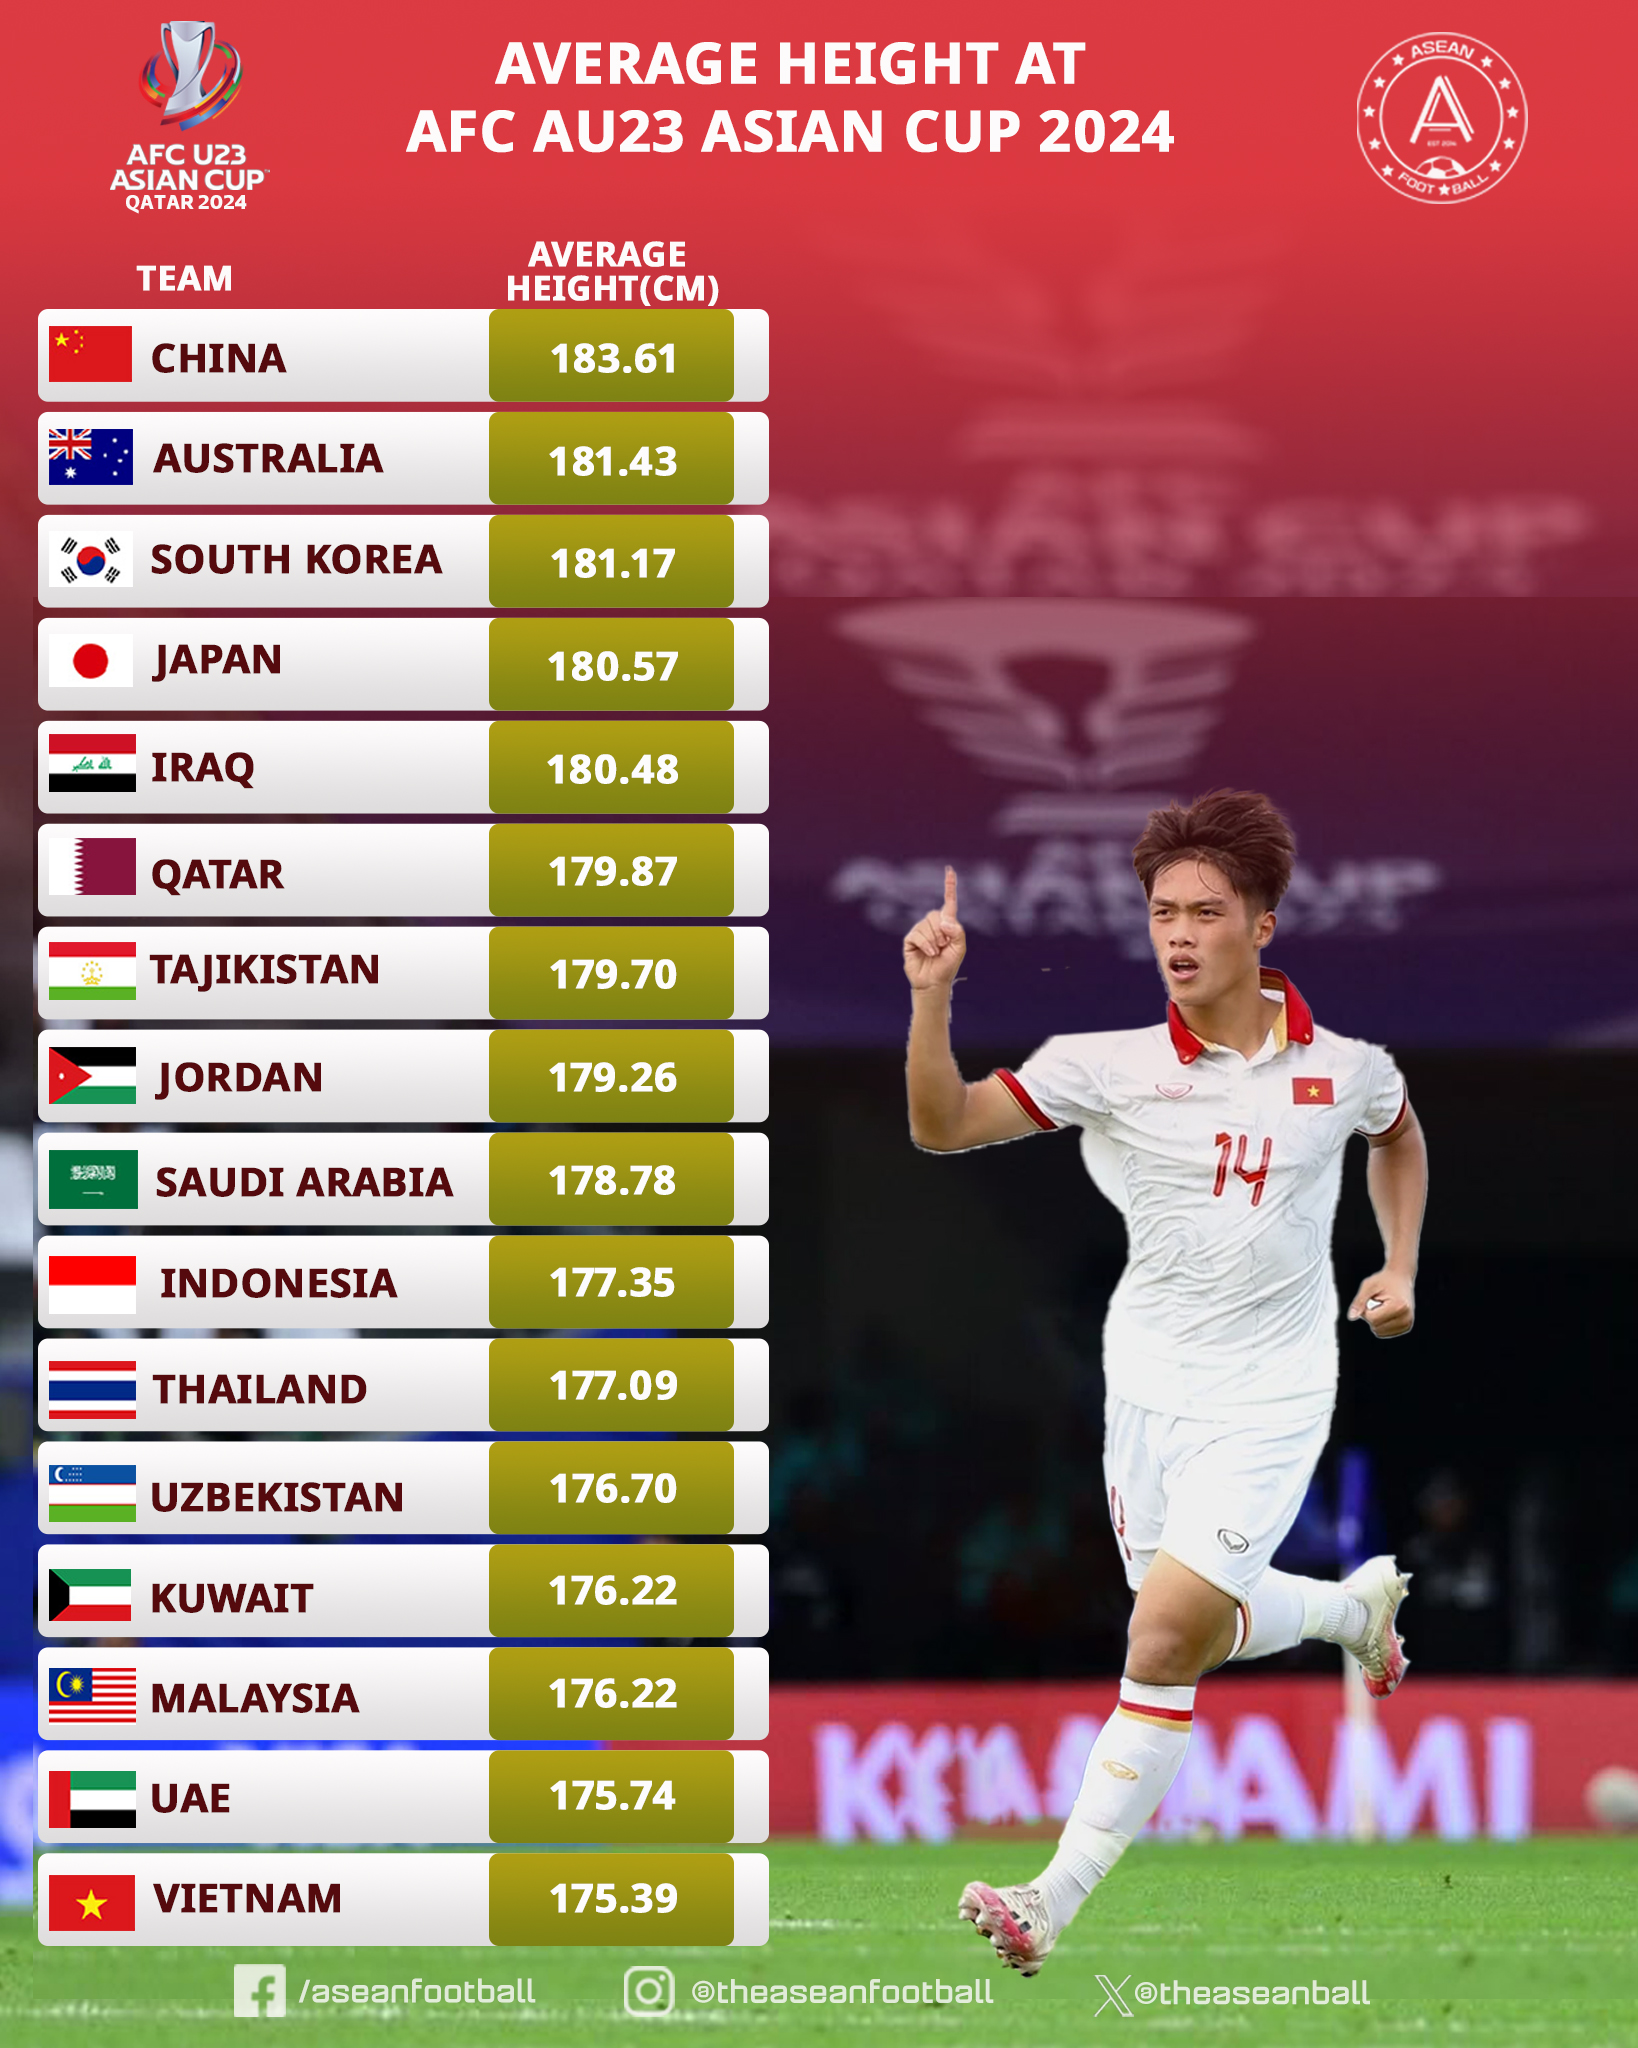 Nhật Bản thua sốc ở giải châu Á, U23 Việt Nam đội sổ ở 1 thống kê - ảnh 3